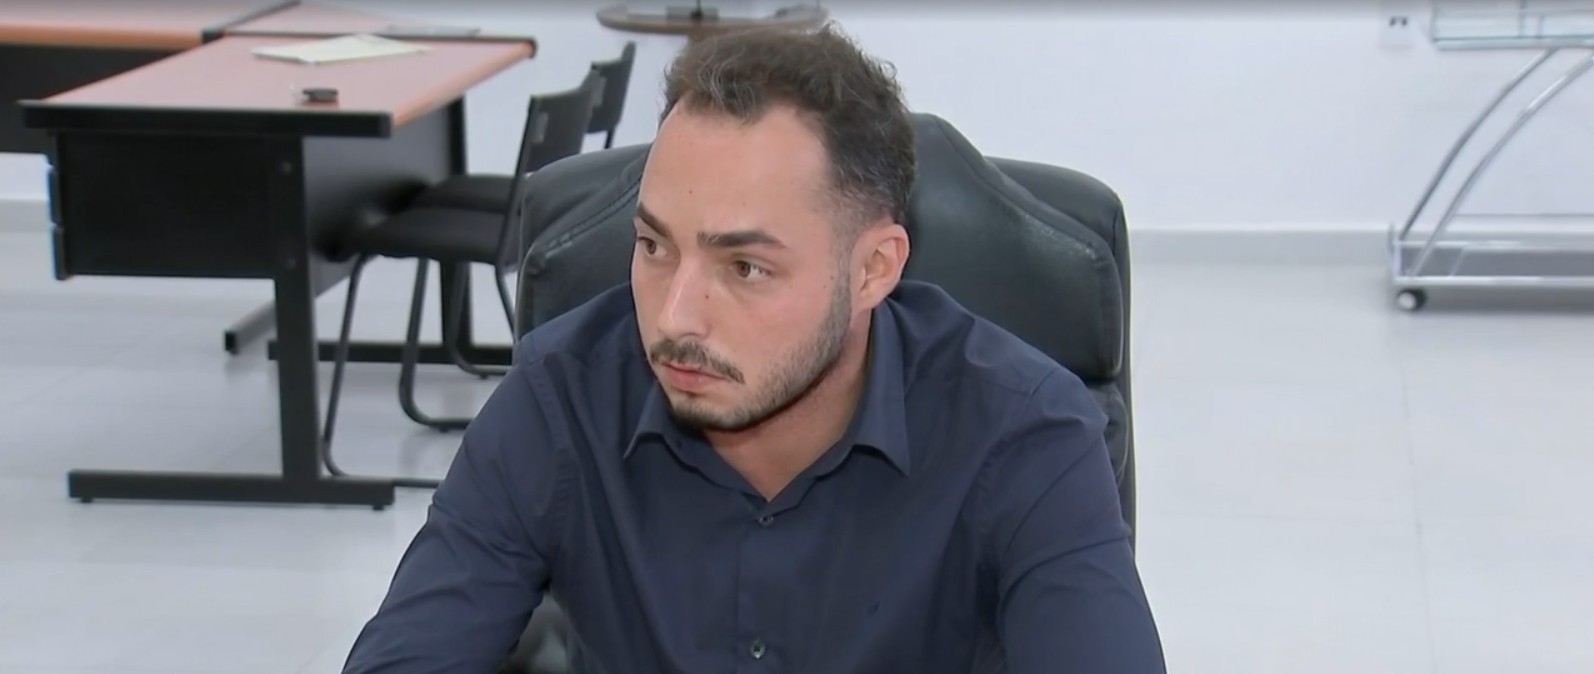 Novo prefeito que assumiu cargo após cassação exonera 17 servidores ligados ao antecessor em Birigui